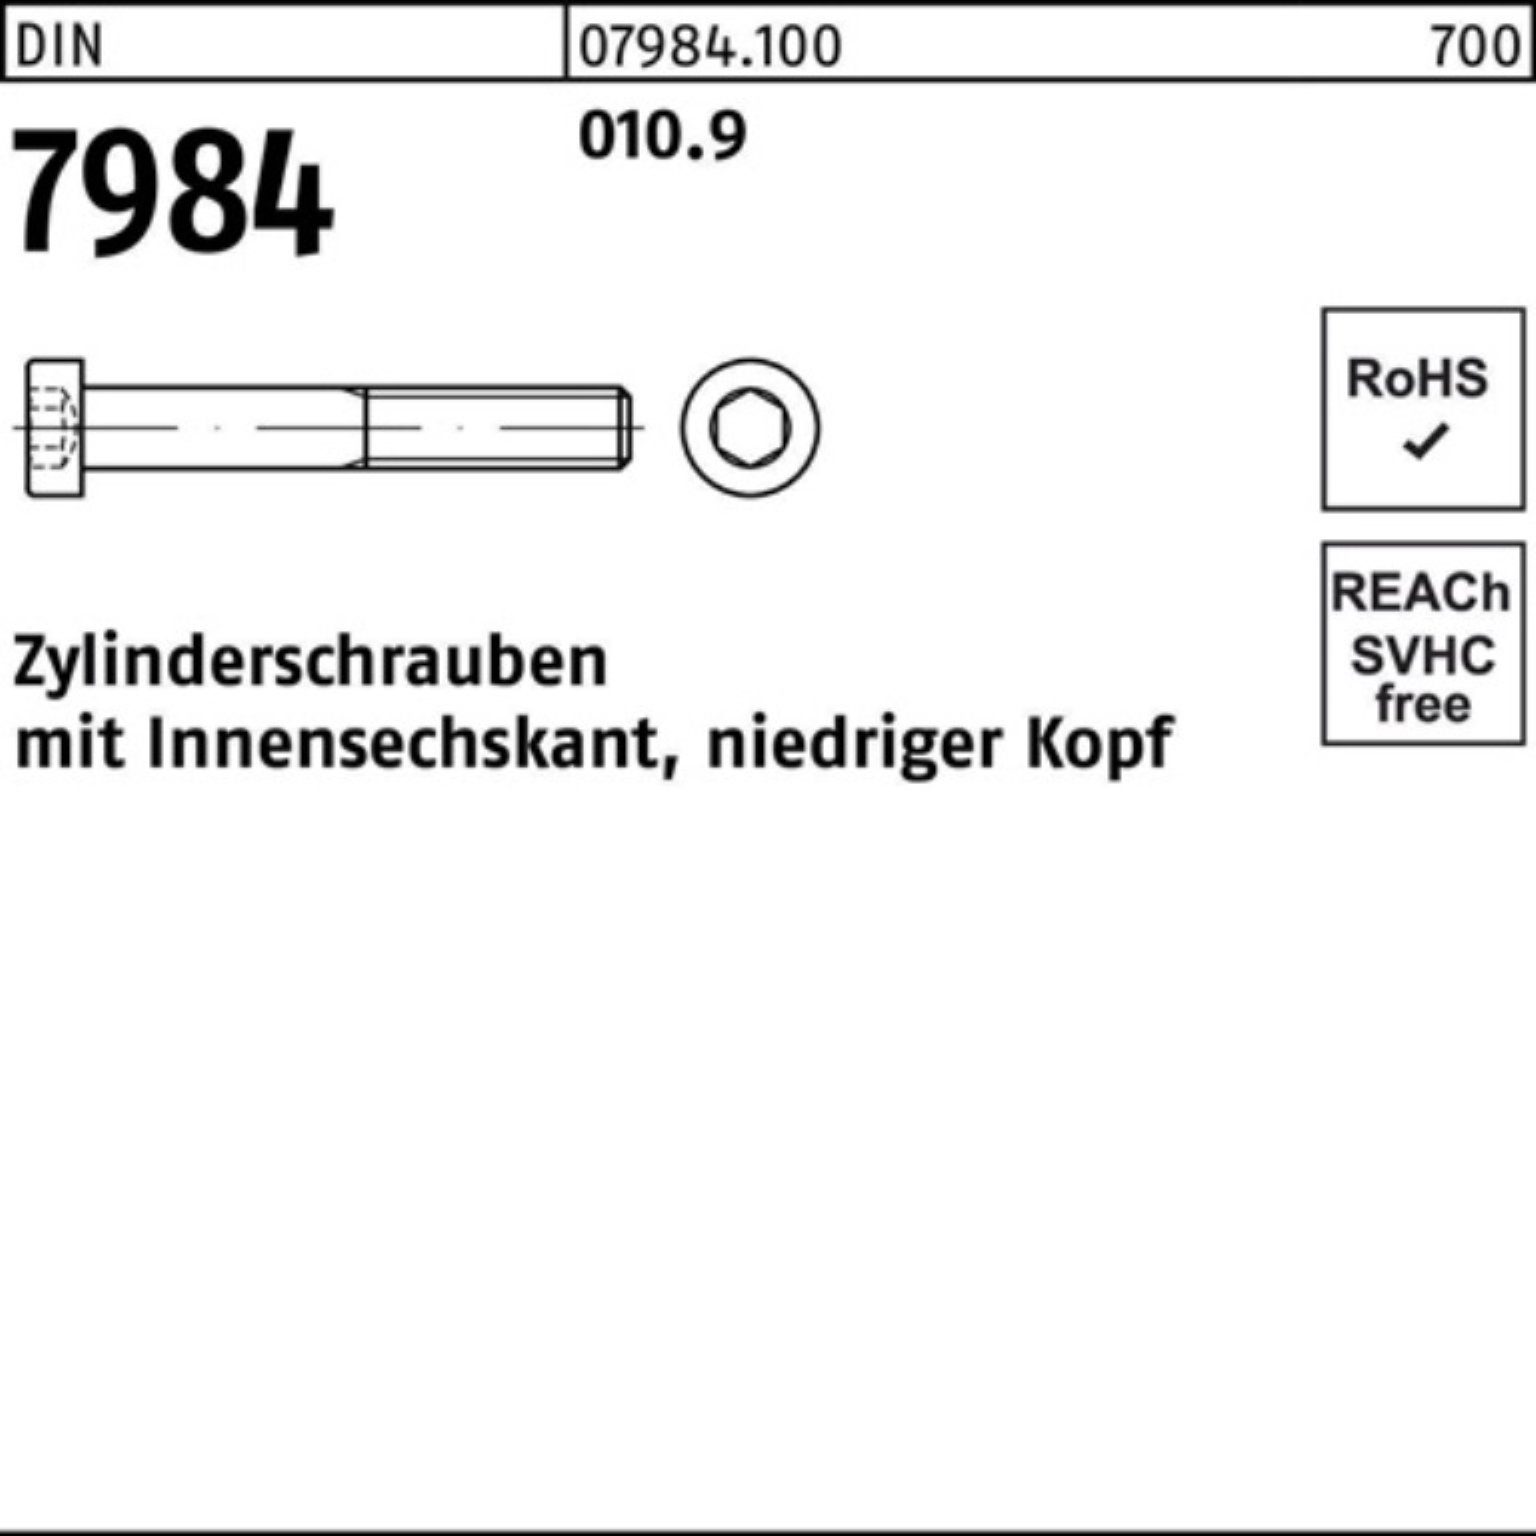 Zylinderschraube Zylinderschraube 010.9 7984 DIN 500er 10 Reyher Stück M5x 500 Pack Innen-6kt